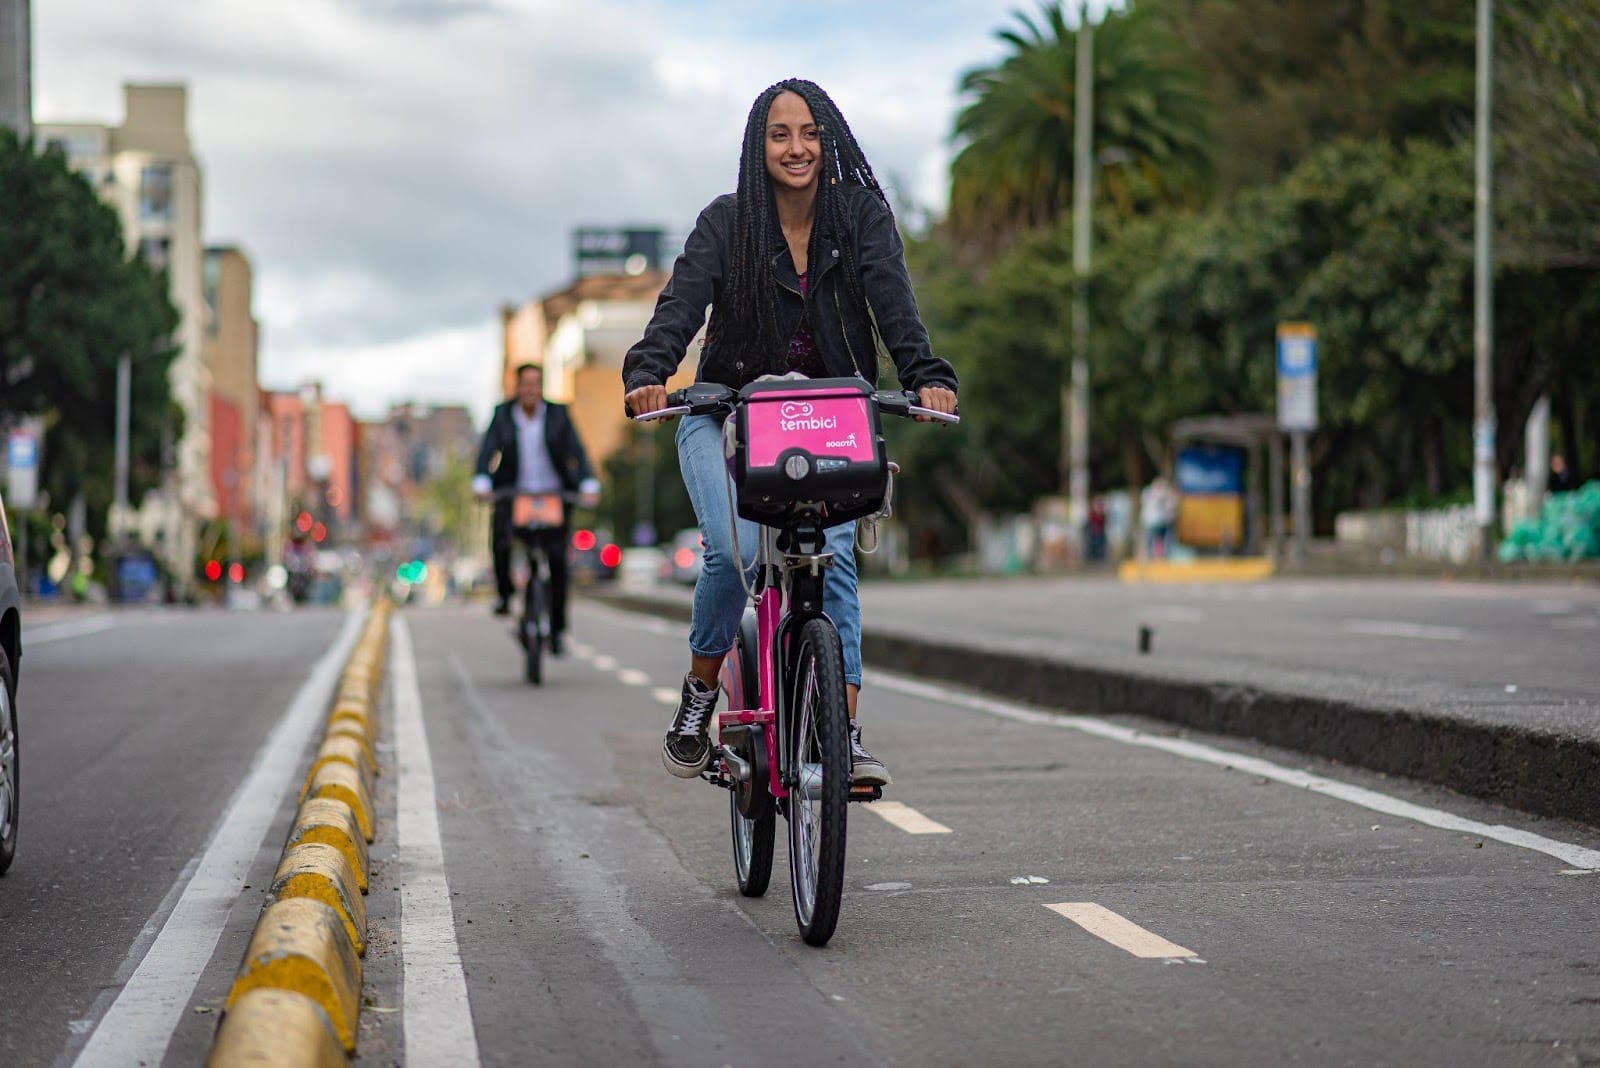 Una joven sonriendo mientras anda en bicicleta por una calle de la ciudad, con una canasta rosa en su bicicleta y un fondo borroso de otros ciclistas y vegetación, promoviendo la movilidad sostenible.